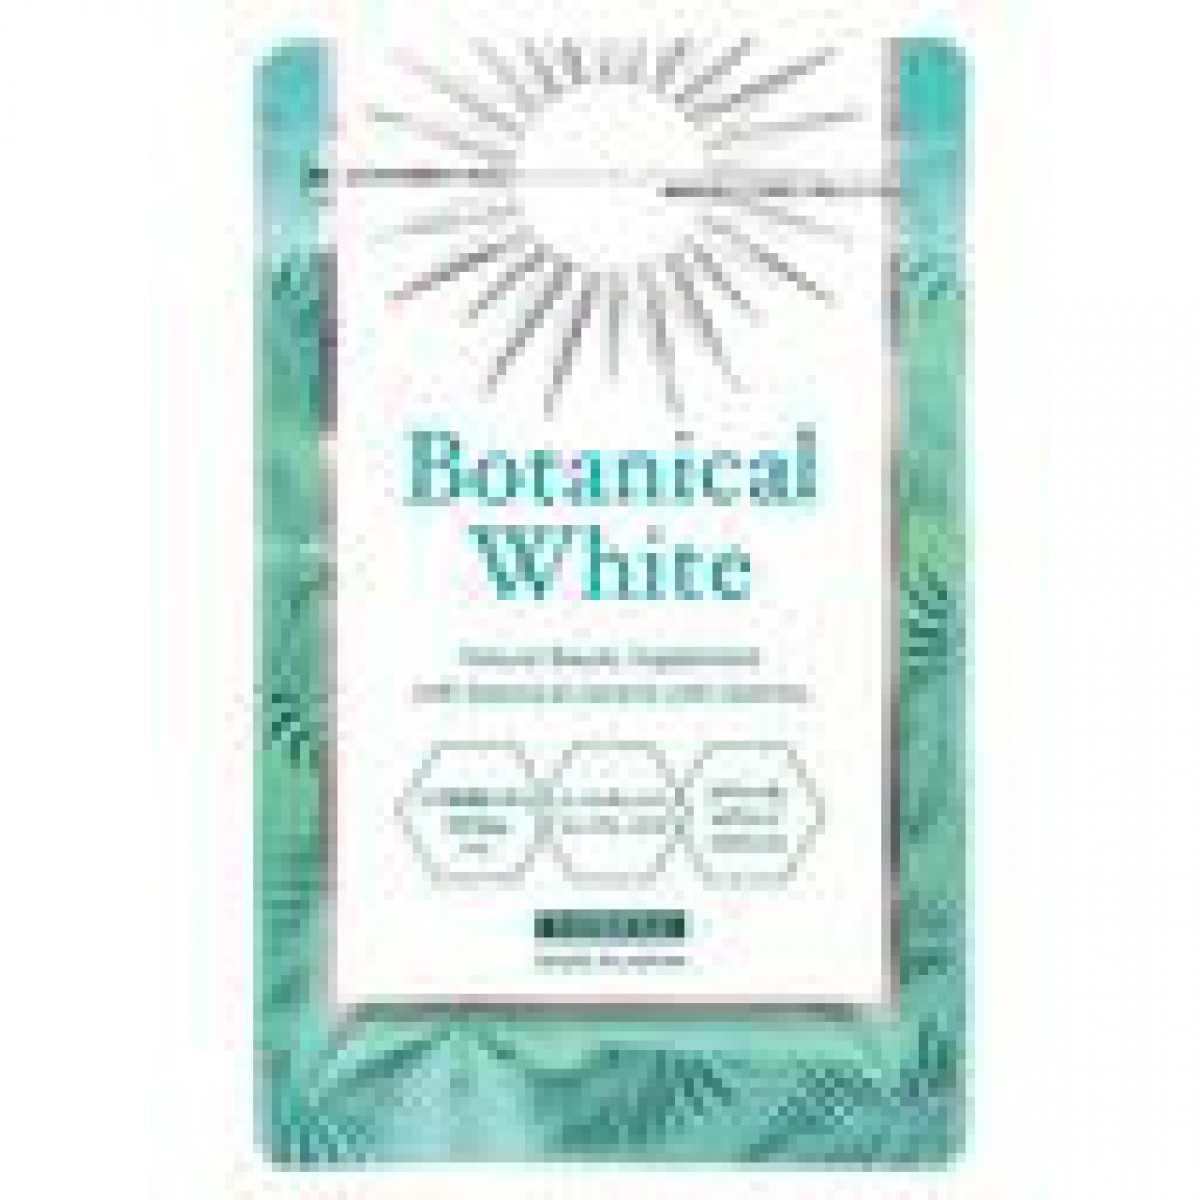 ≪飲む日焼け止め≫ボタニカルホワイト - Botanical White